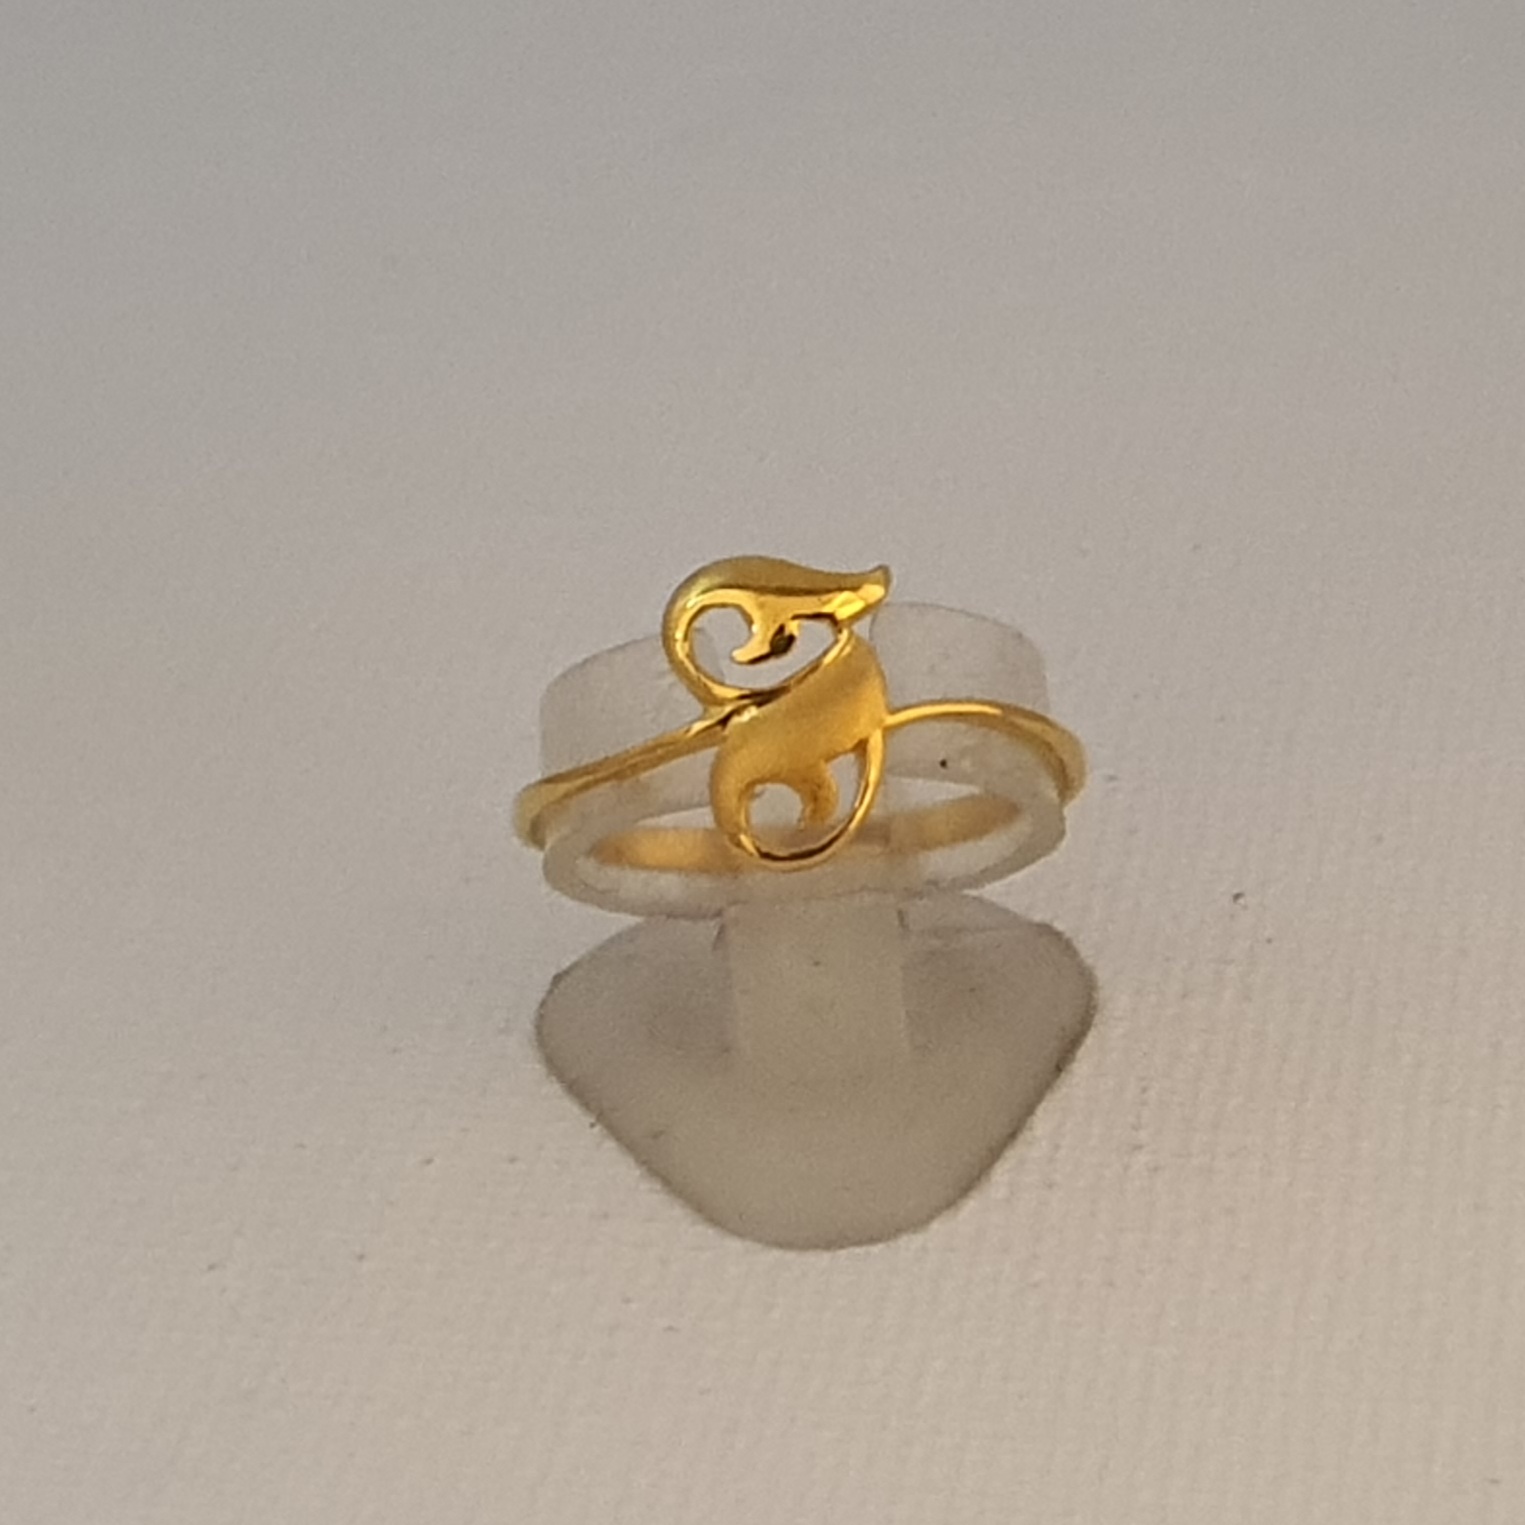 1 To 3 Grams Gold Rings Designs For Women's | 22K916 HUID hallmark Rings 🔥  - YouTube